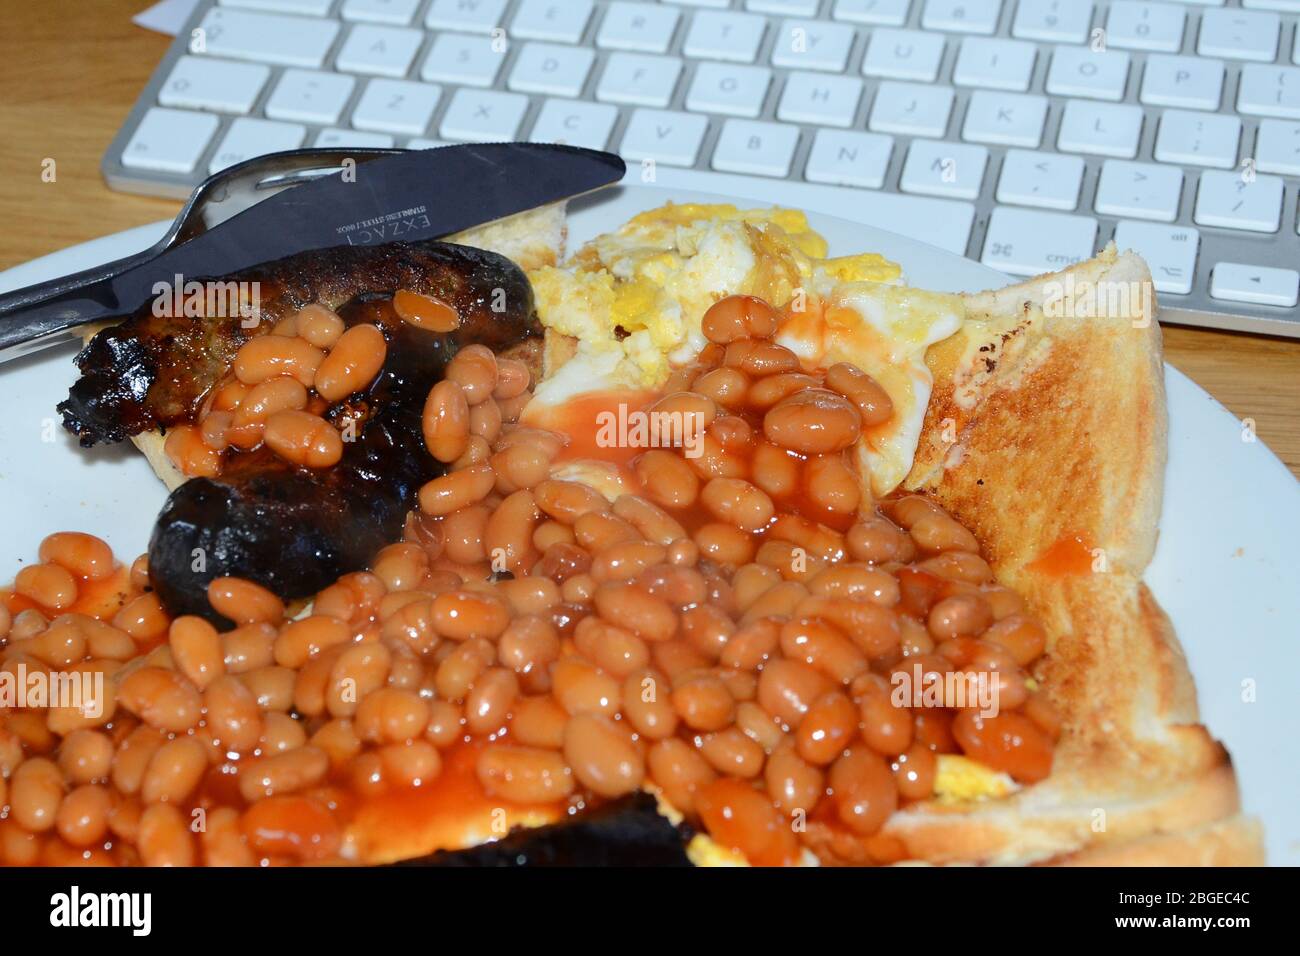 breakfast, Covid19, working from home, Coronavirus Stock Photo